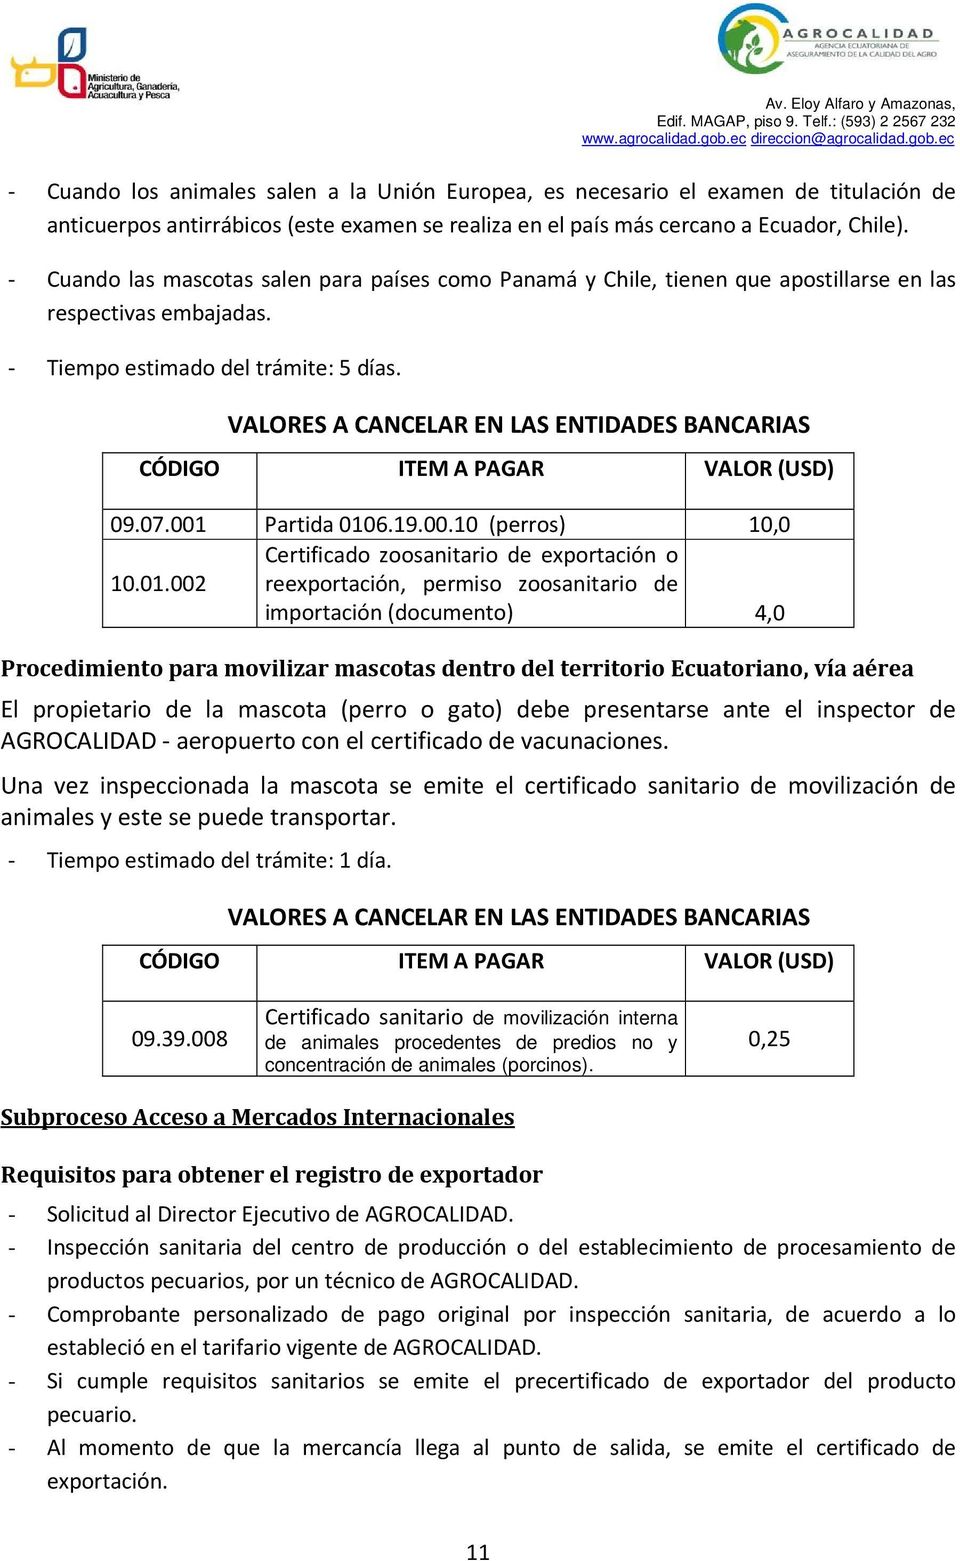 VALORES A CANCELAR EN LAS ENTIDADES BANCARIAS CÓDIGO ITEM A PAGAR VALOR (USD) 09.07.001 